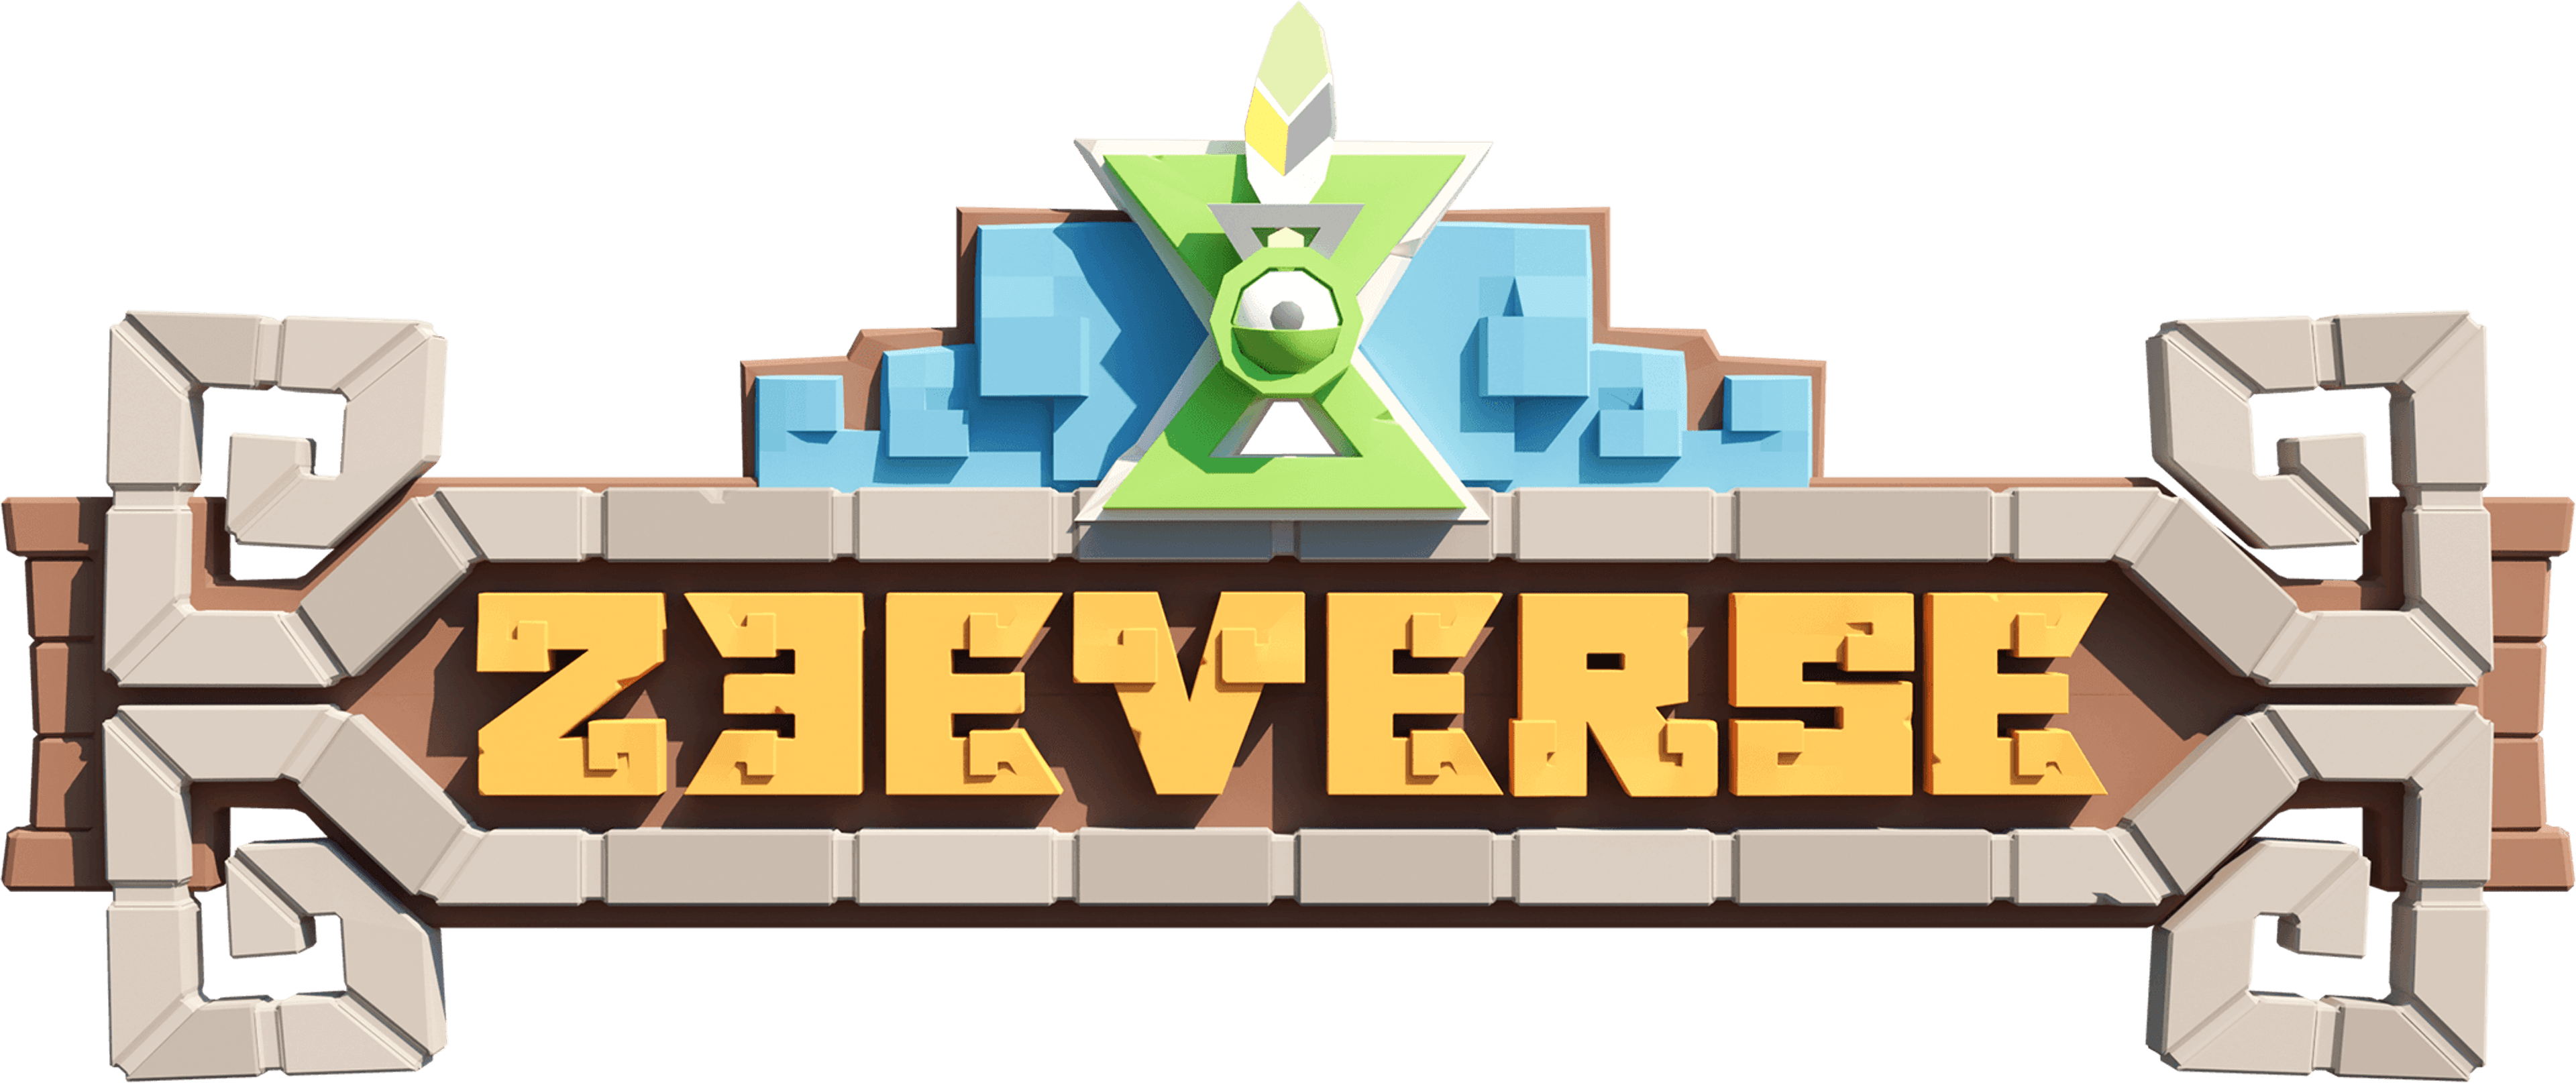 zeeverse_logo